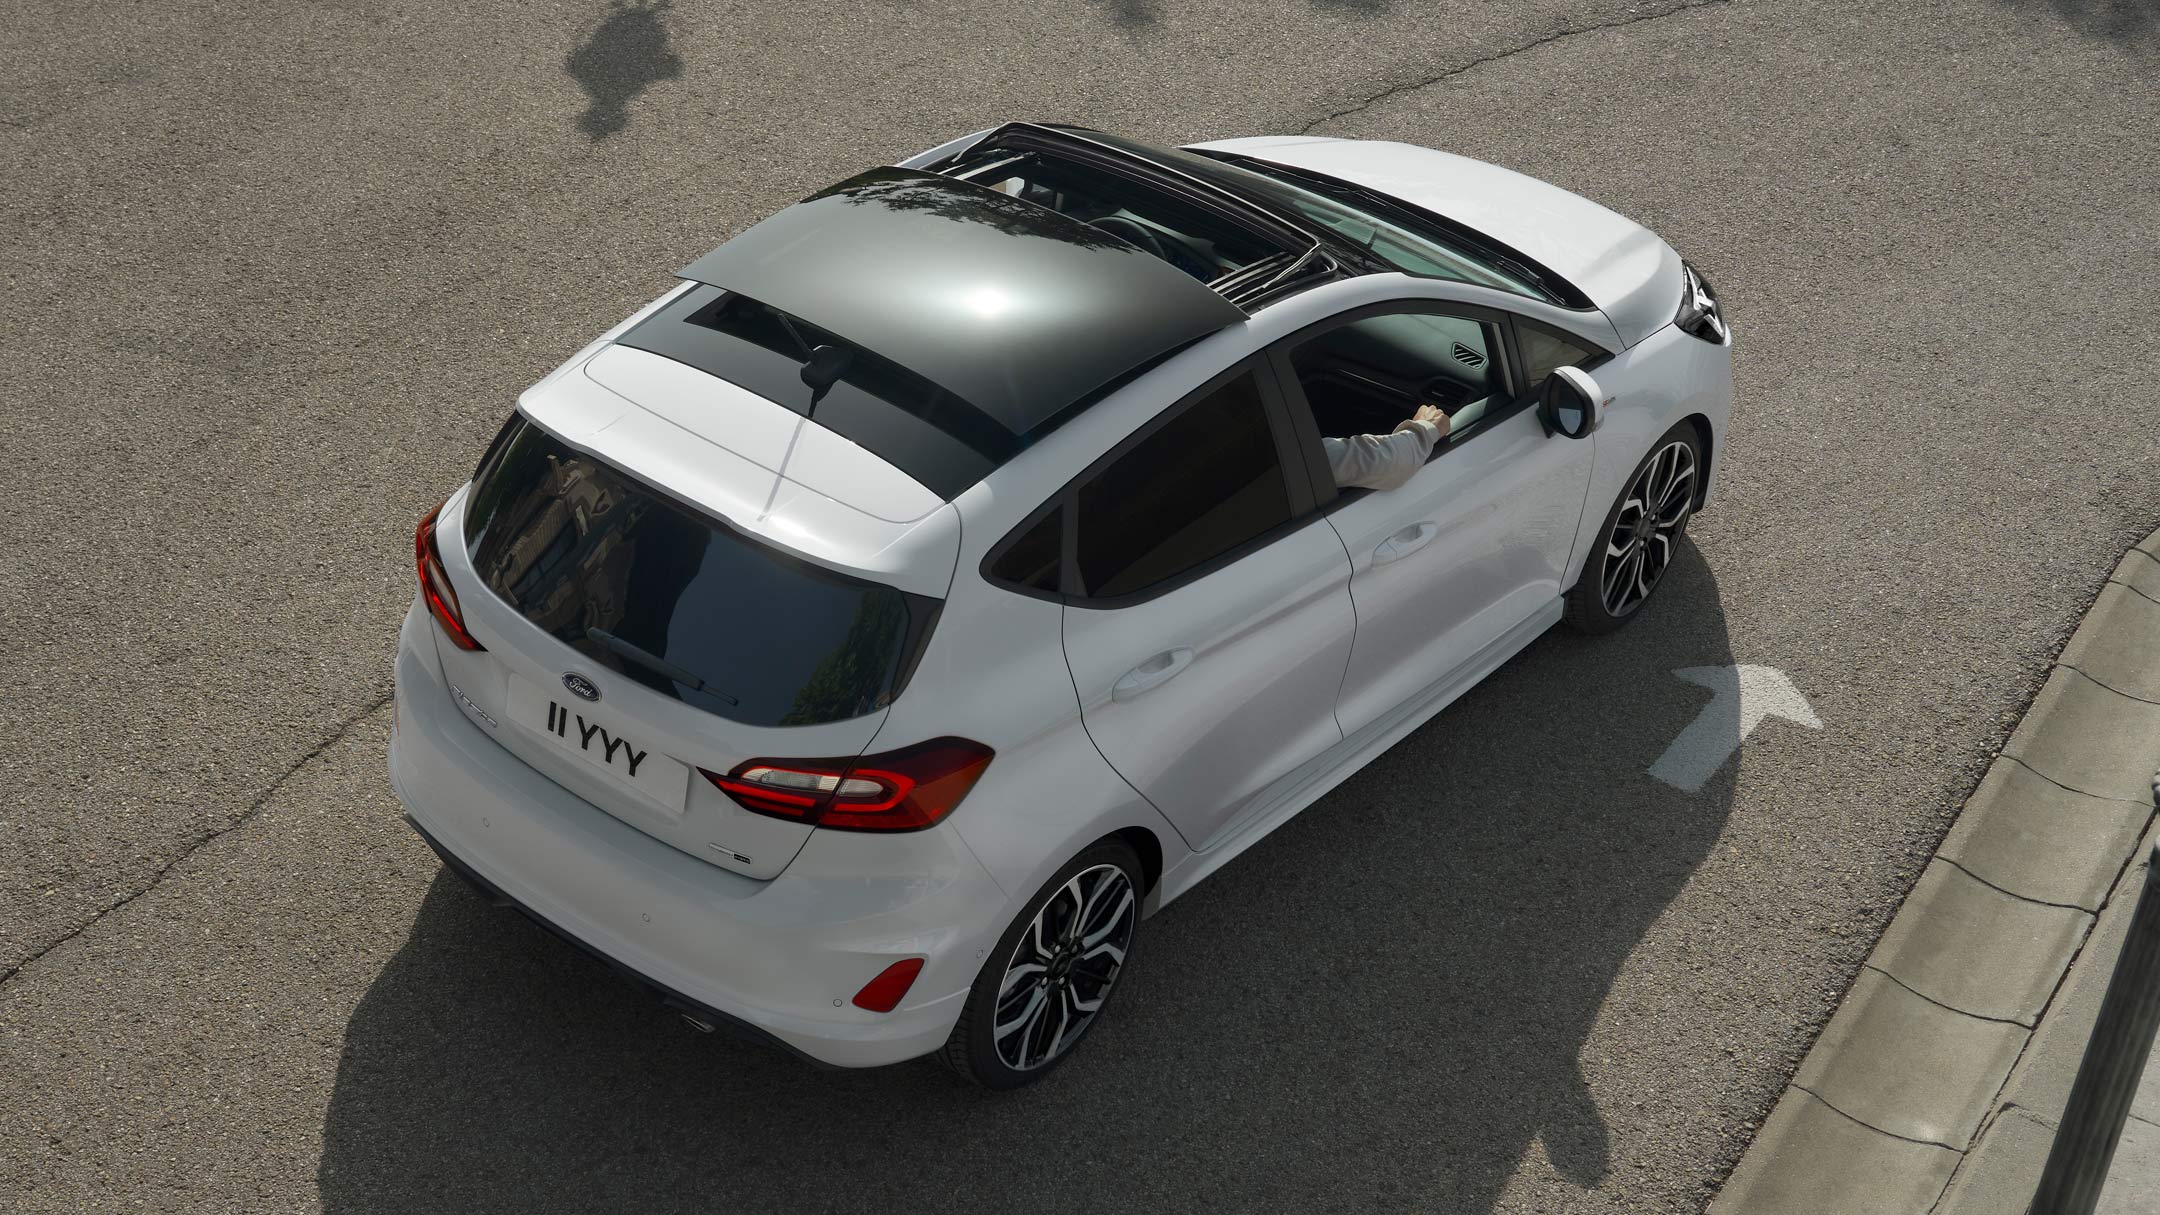 Ford Fiesta bianca. Vista posteriore a tre quarti dall’alto con visuale sul tetto panoramico apribile, in marcia su una strada.